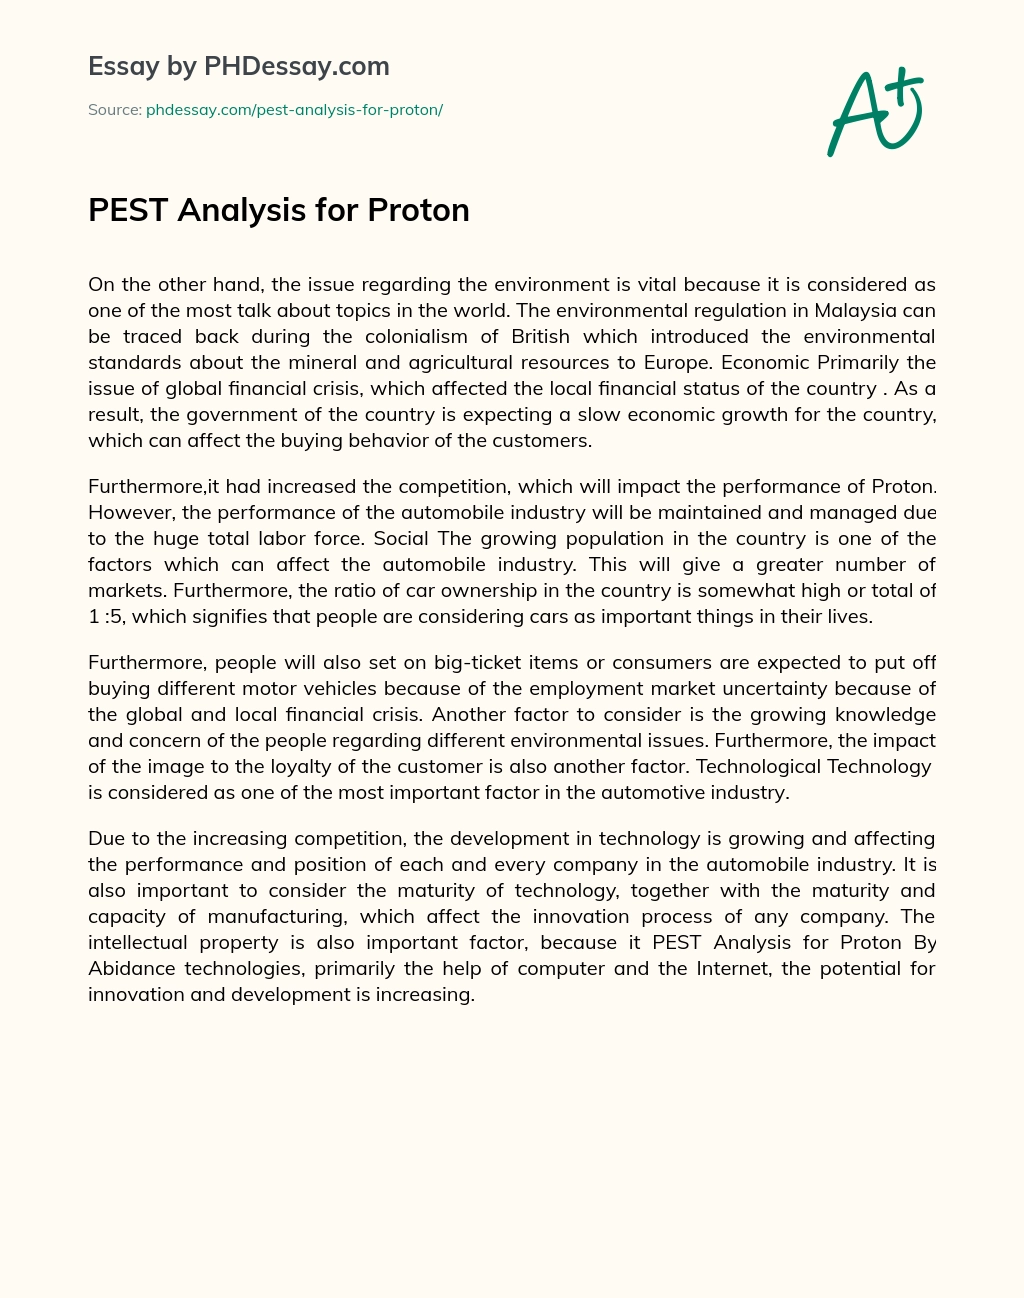 PEST Analysis for Proton essay